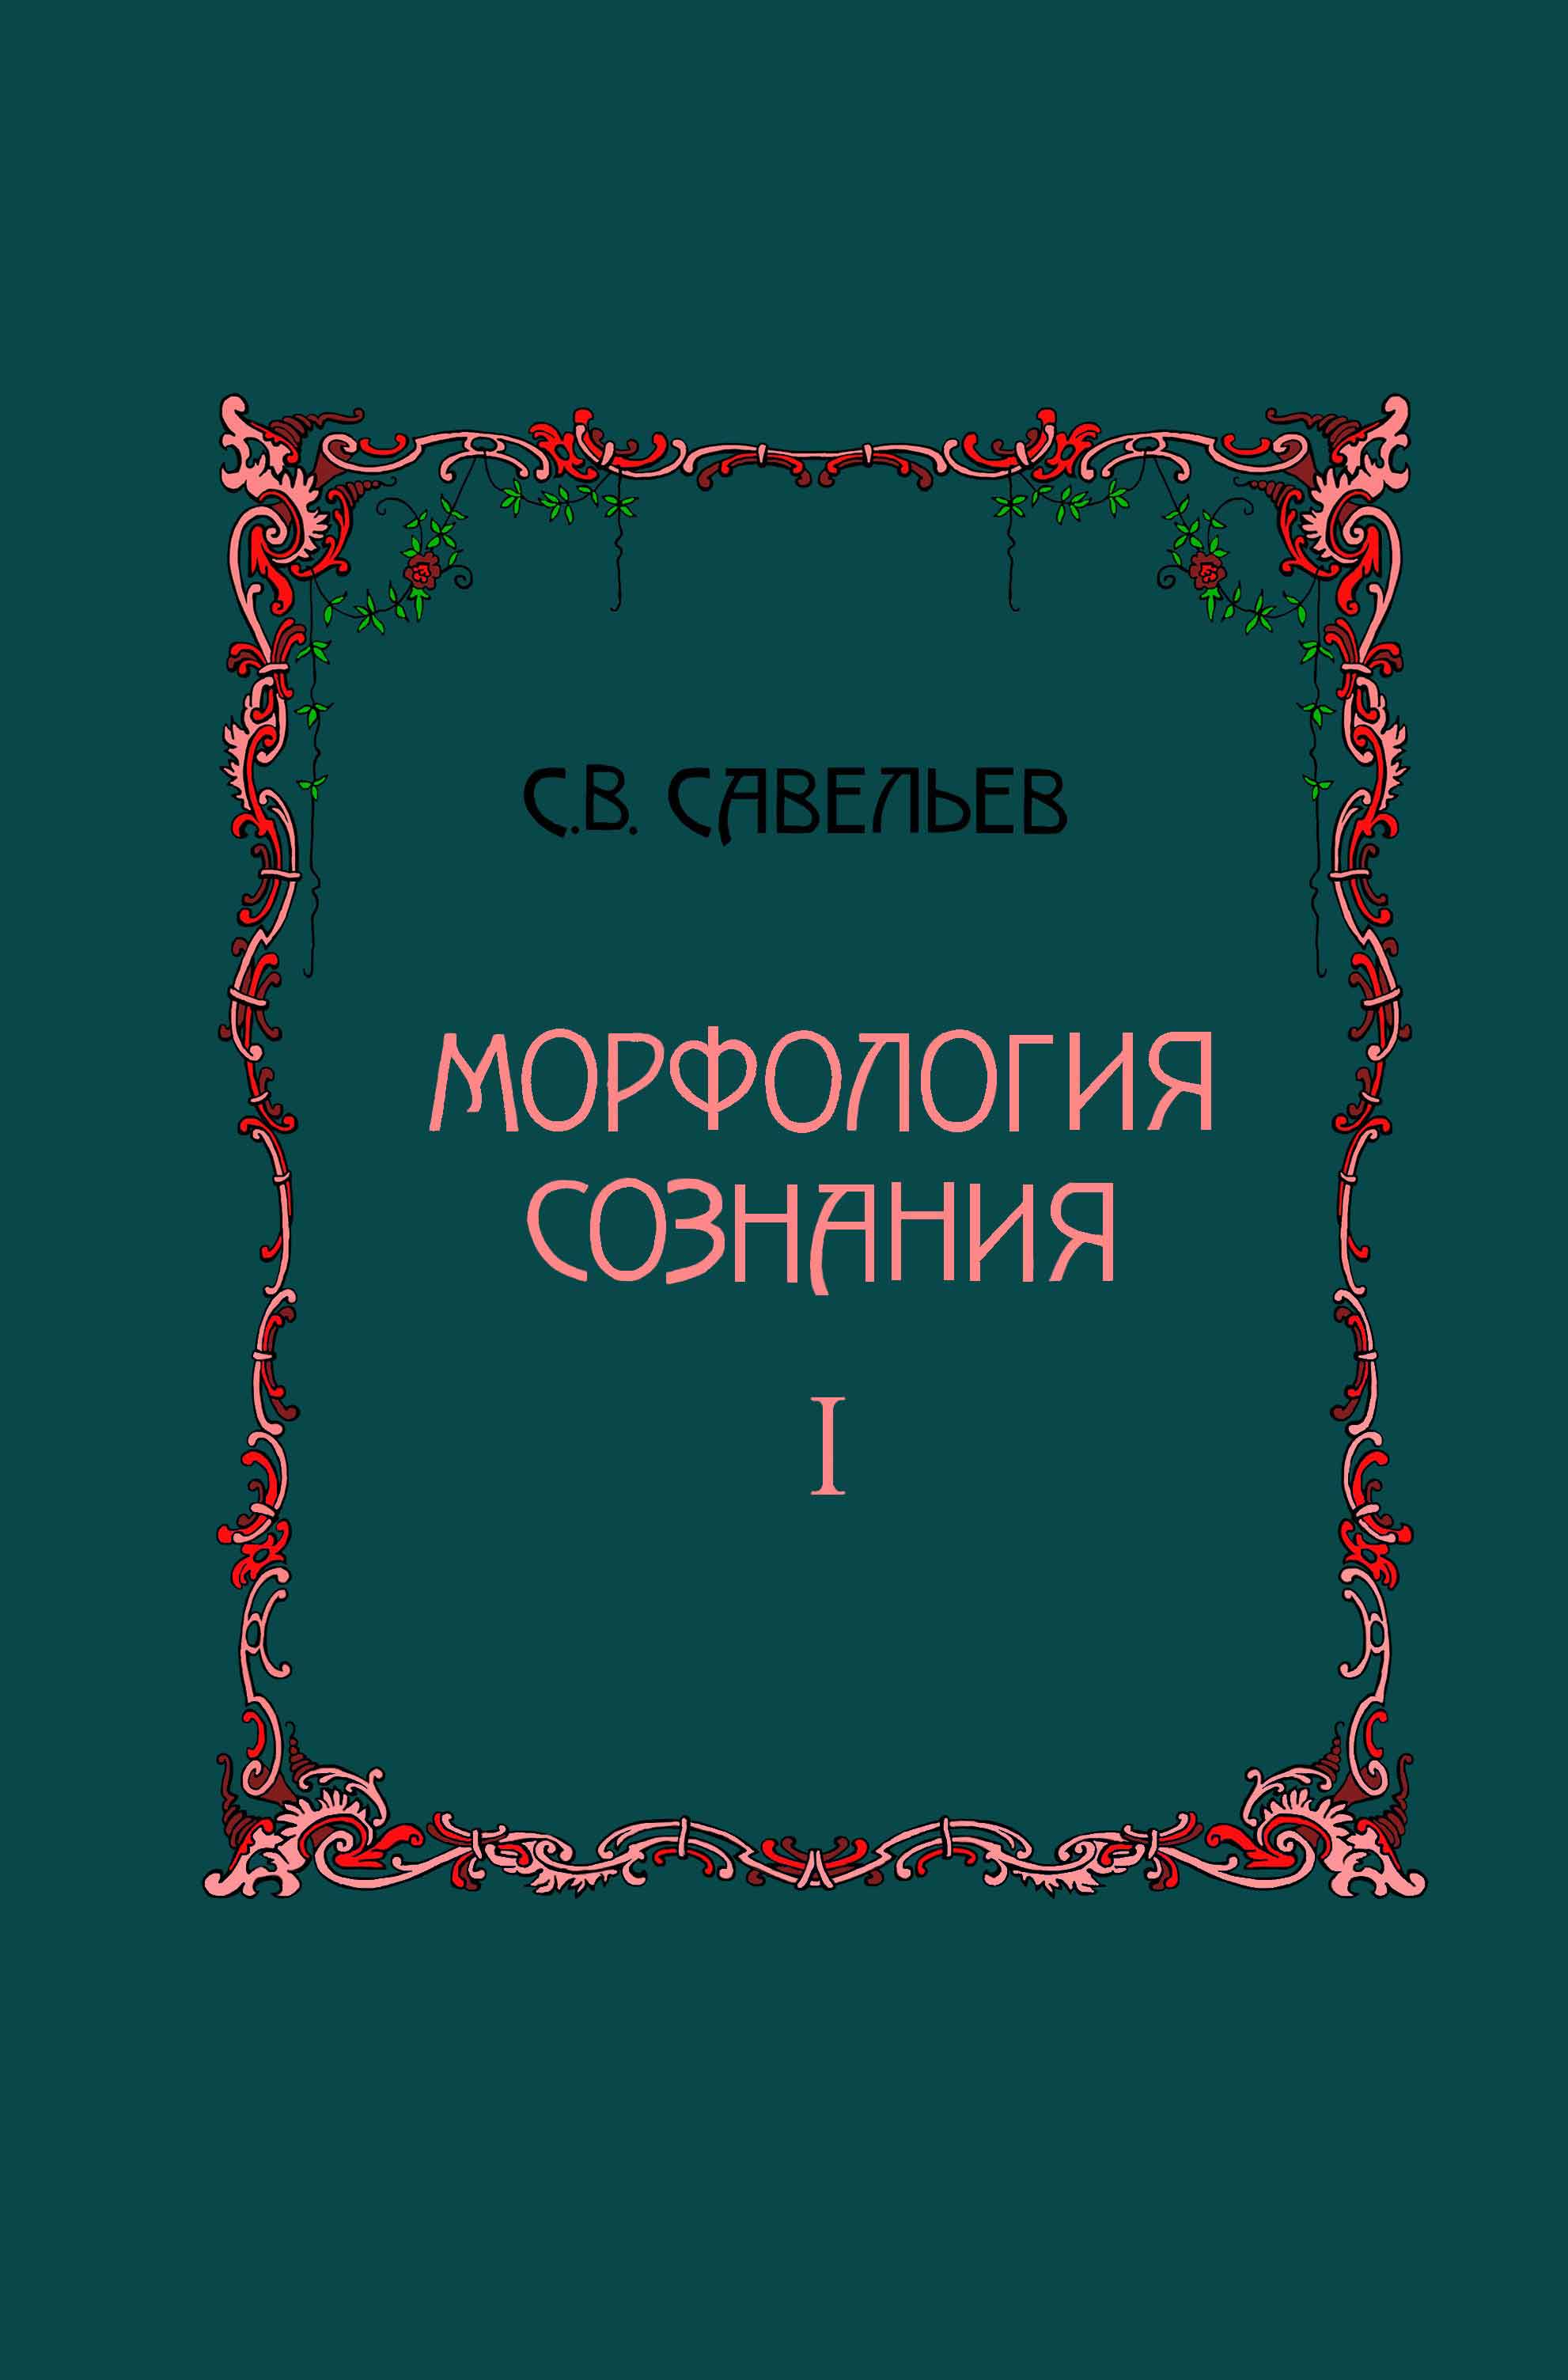 Савельев С.В. Морфология сознания: В 2 томах. Т. 1 